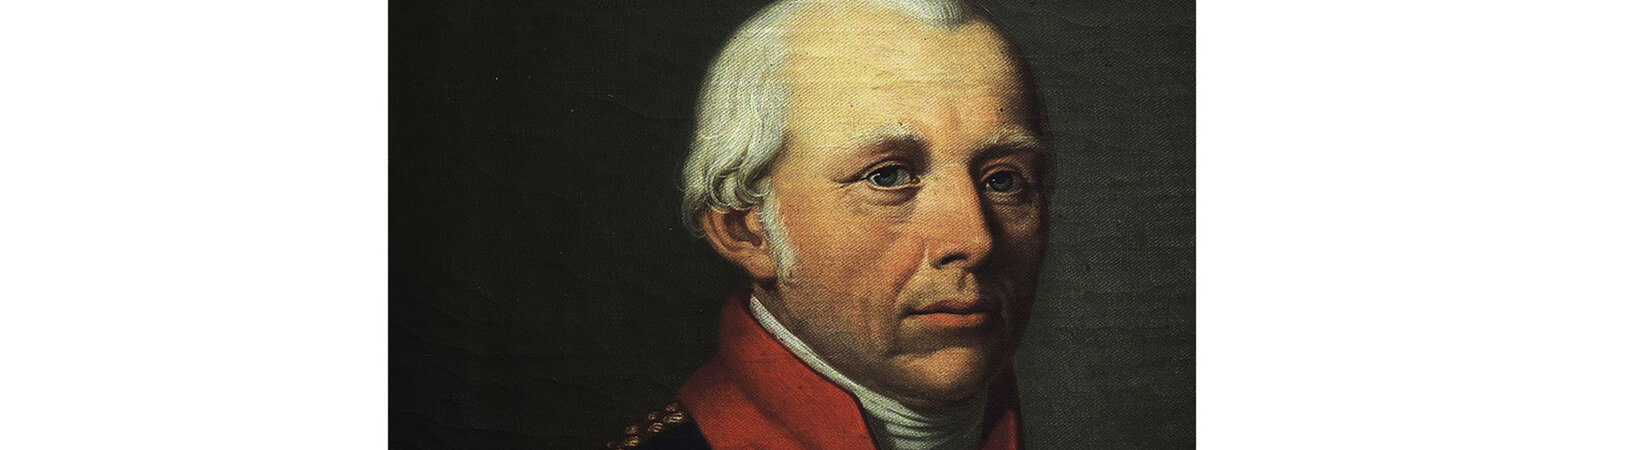 Herzog Ernst II. von Sachsen-Gotha und Altenburg (1745–1804) zwischen Wissenschaft, Politik und Geheimbundtätigkeiten